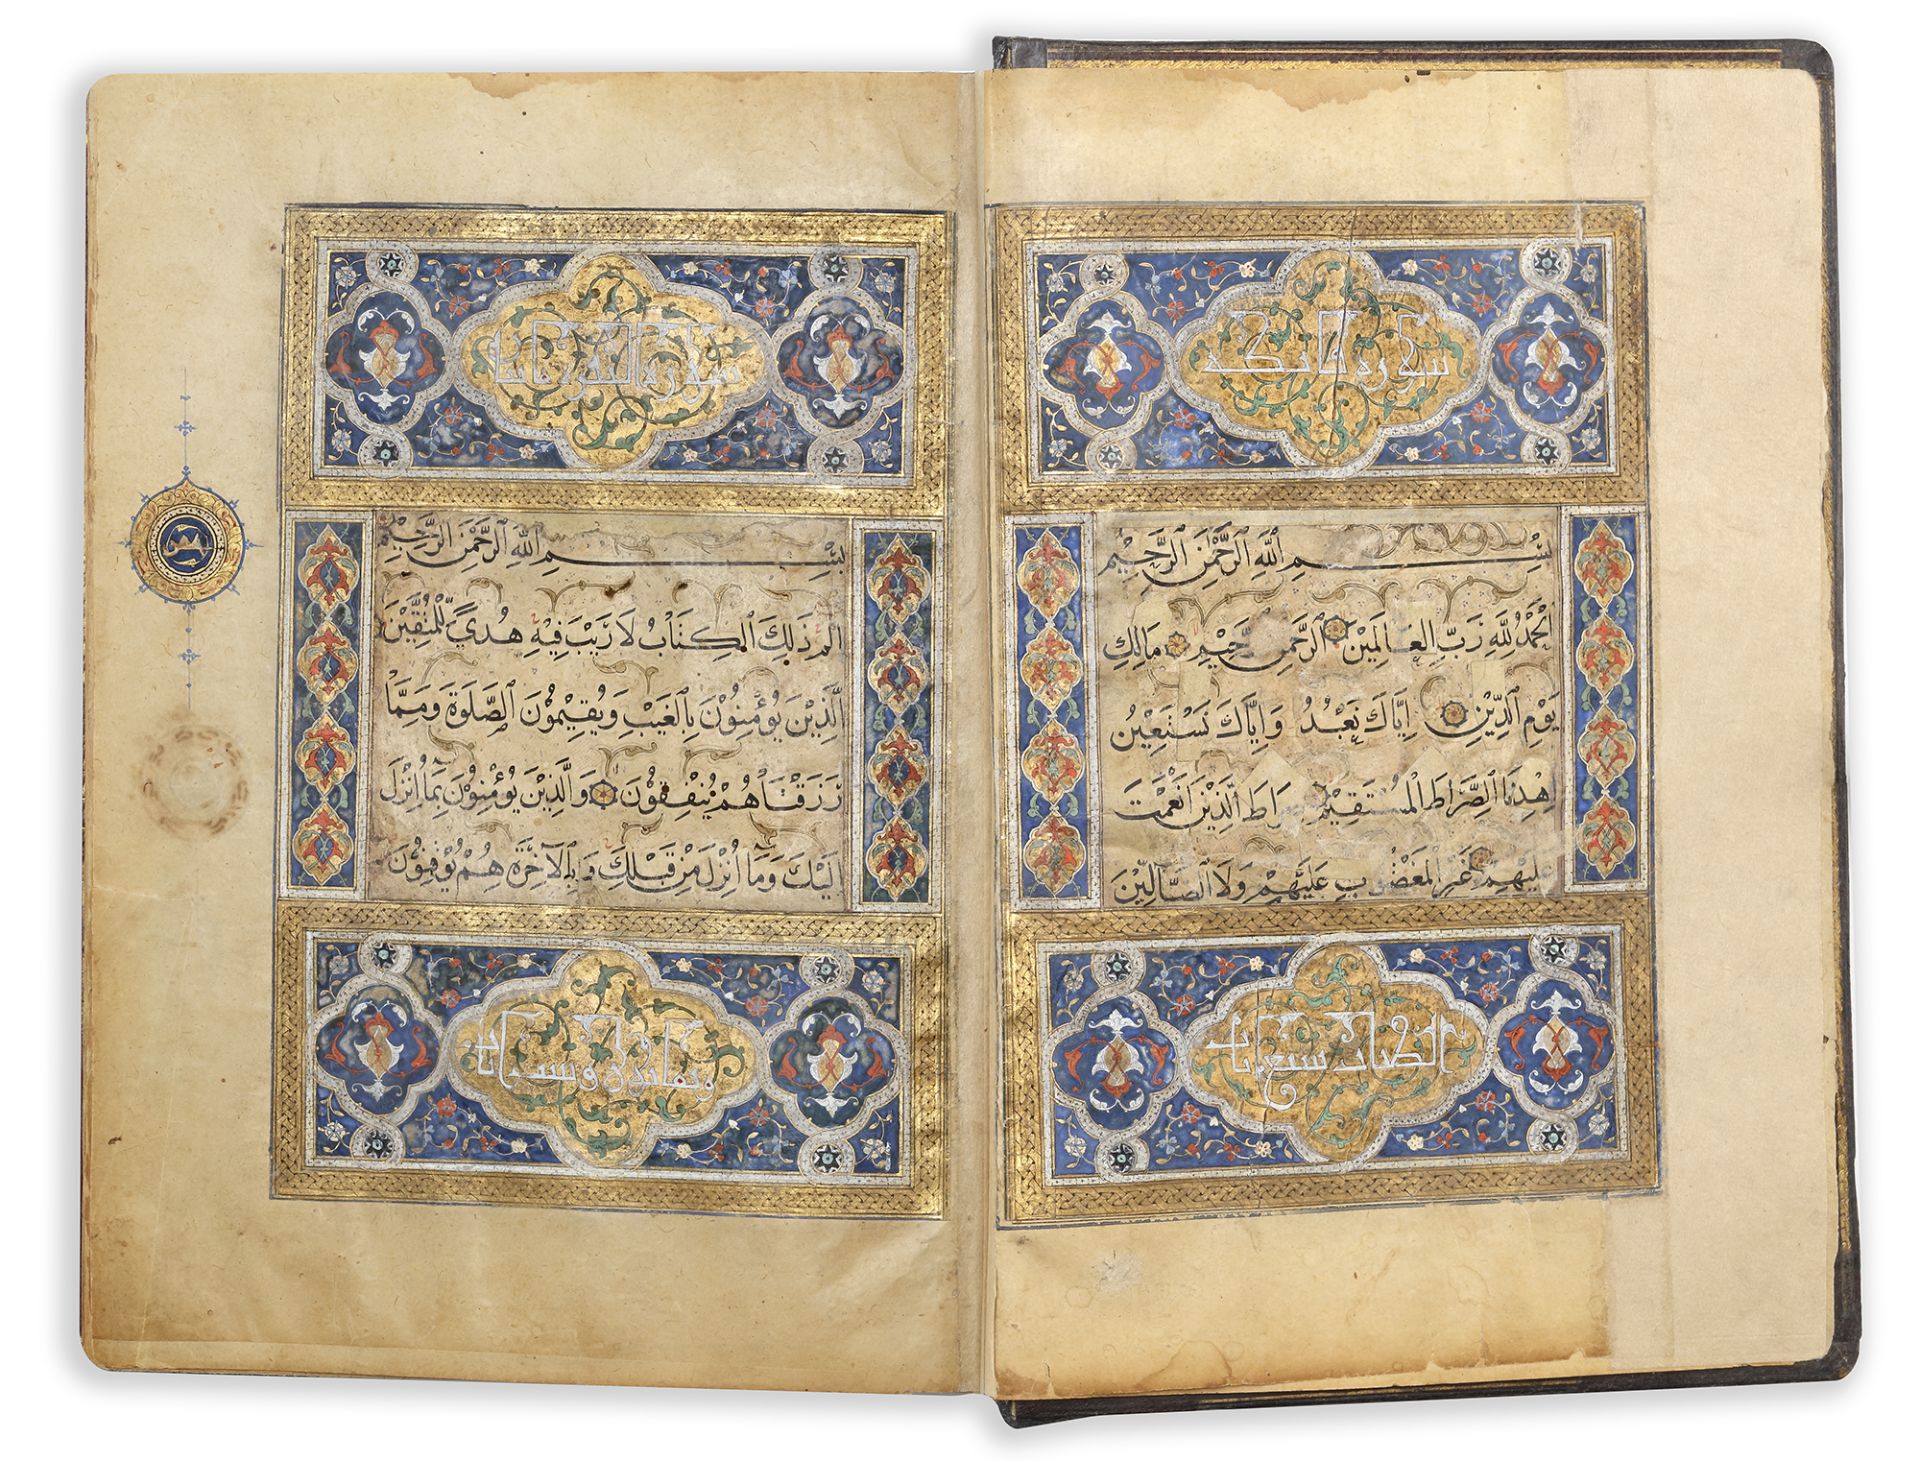 AN ILLUMINATED QURAN, BAGHDAD, QARA QUYUNLU DYNASTY, DATED 870 AH/1465 AD